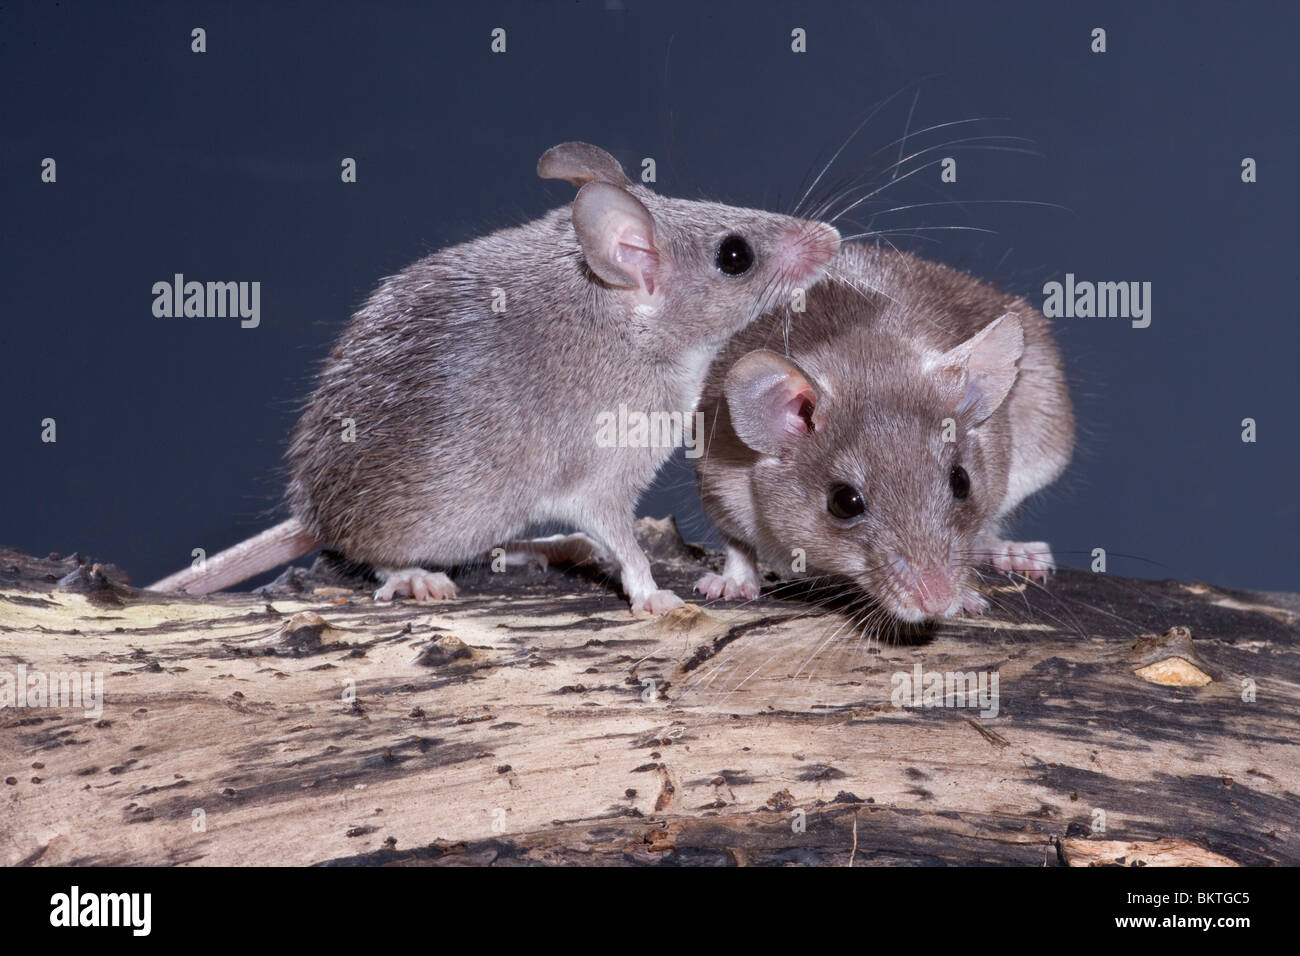 Spinosa egiziano topi (Acomys cahirinus cahirinus). Diritto degli adulti, immaturi sul lato sinistro che mostra animale nel profilo. Foto Stock